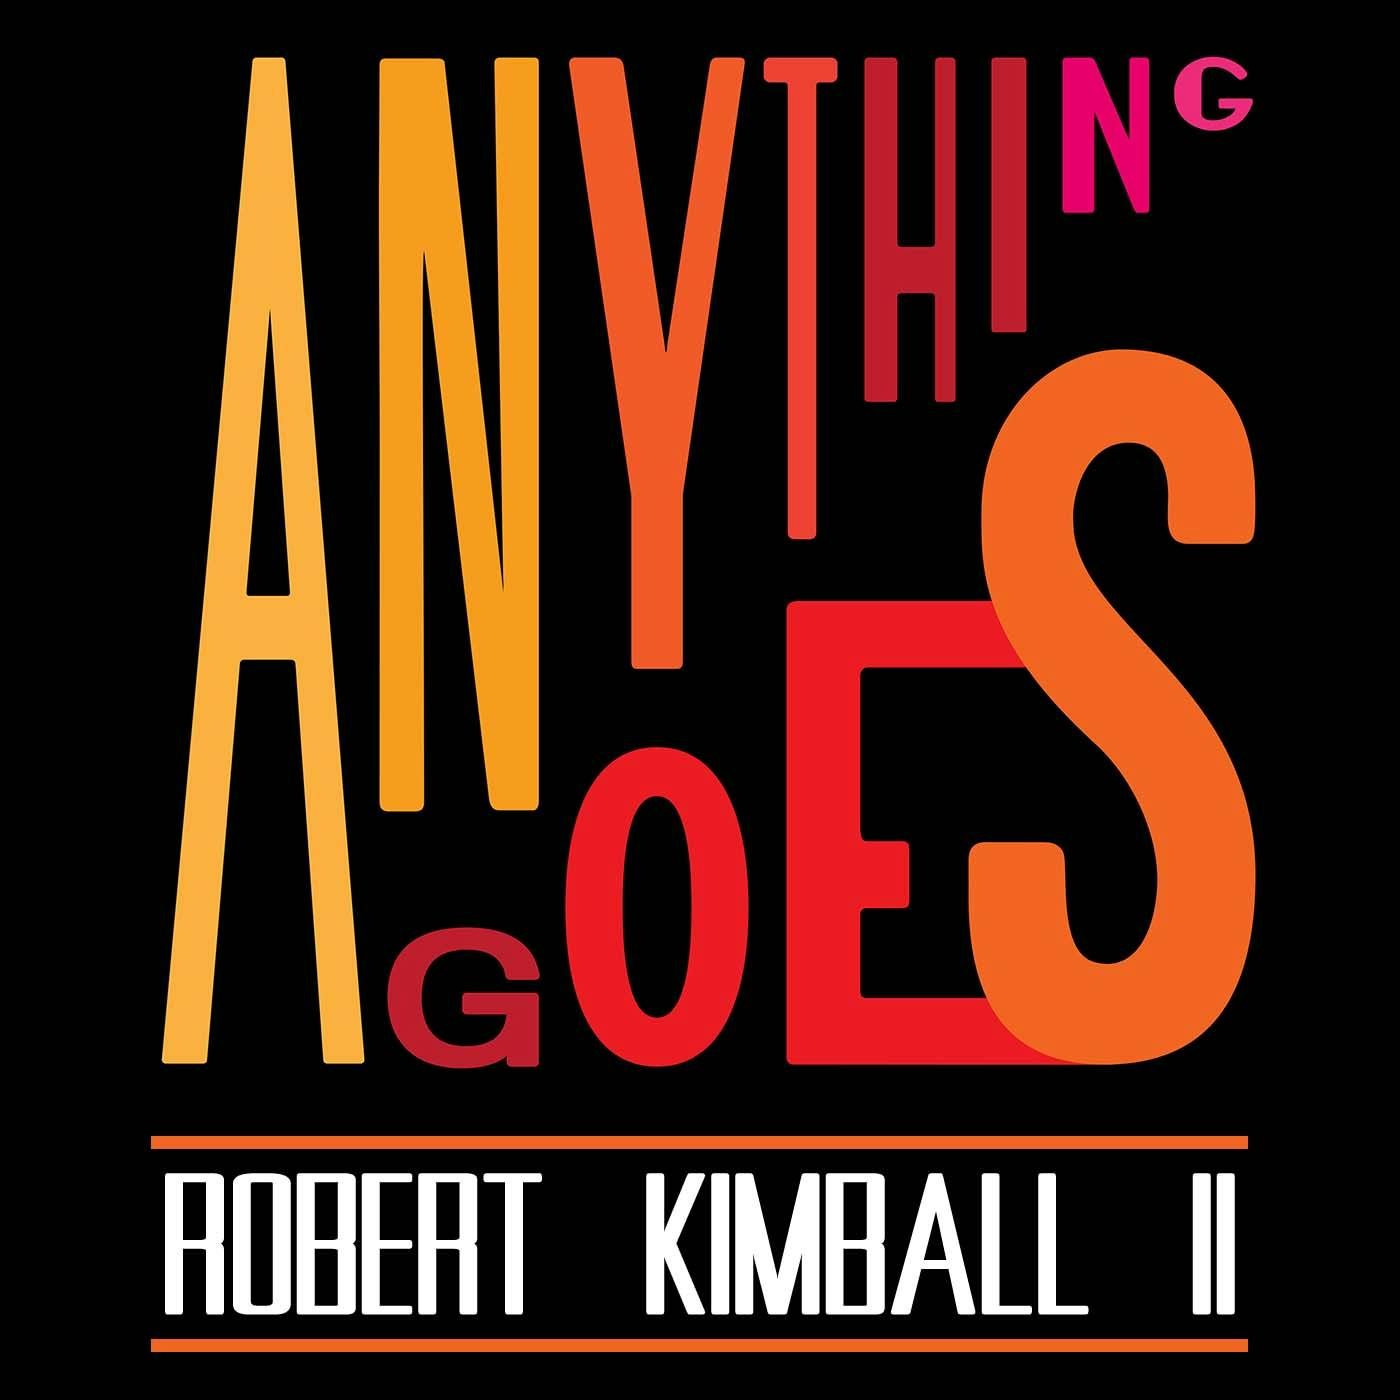 59 Robert Kimball II